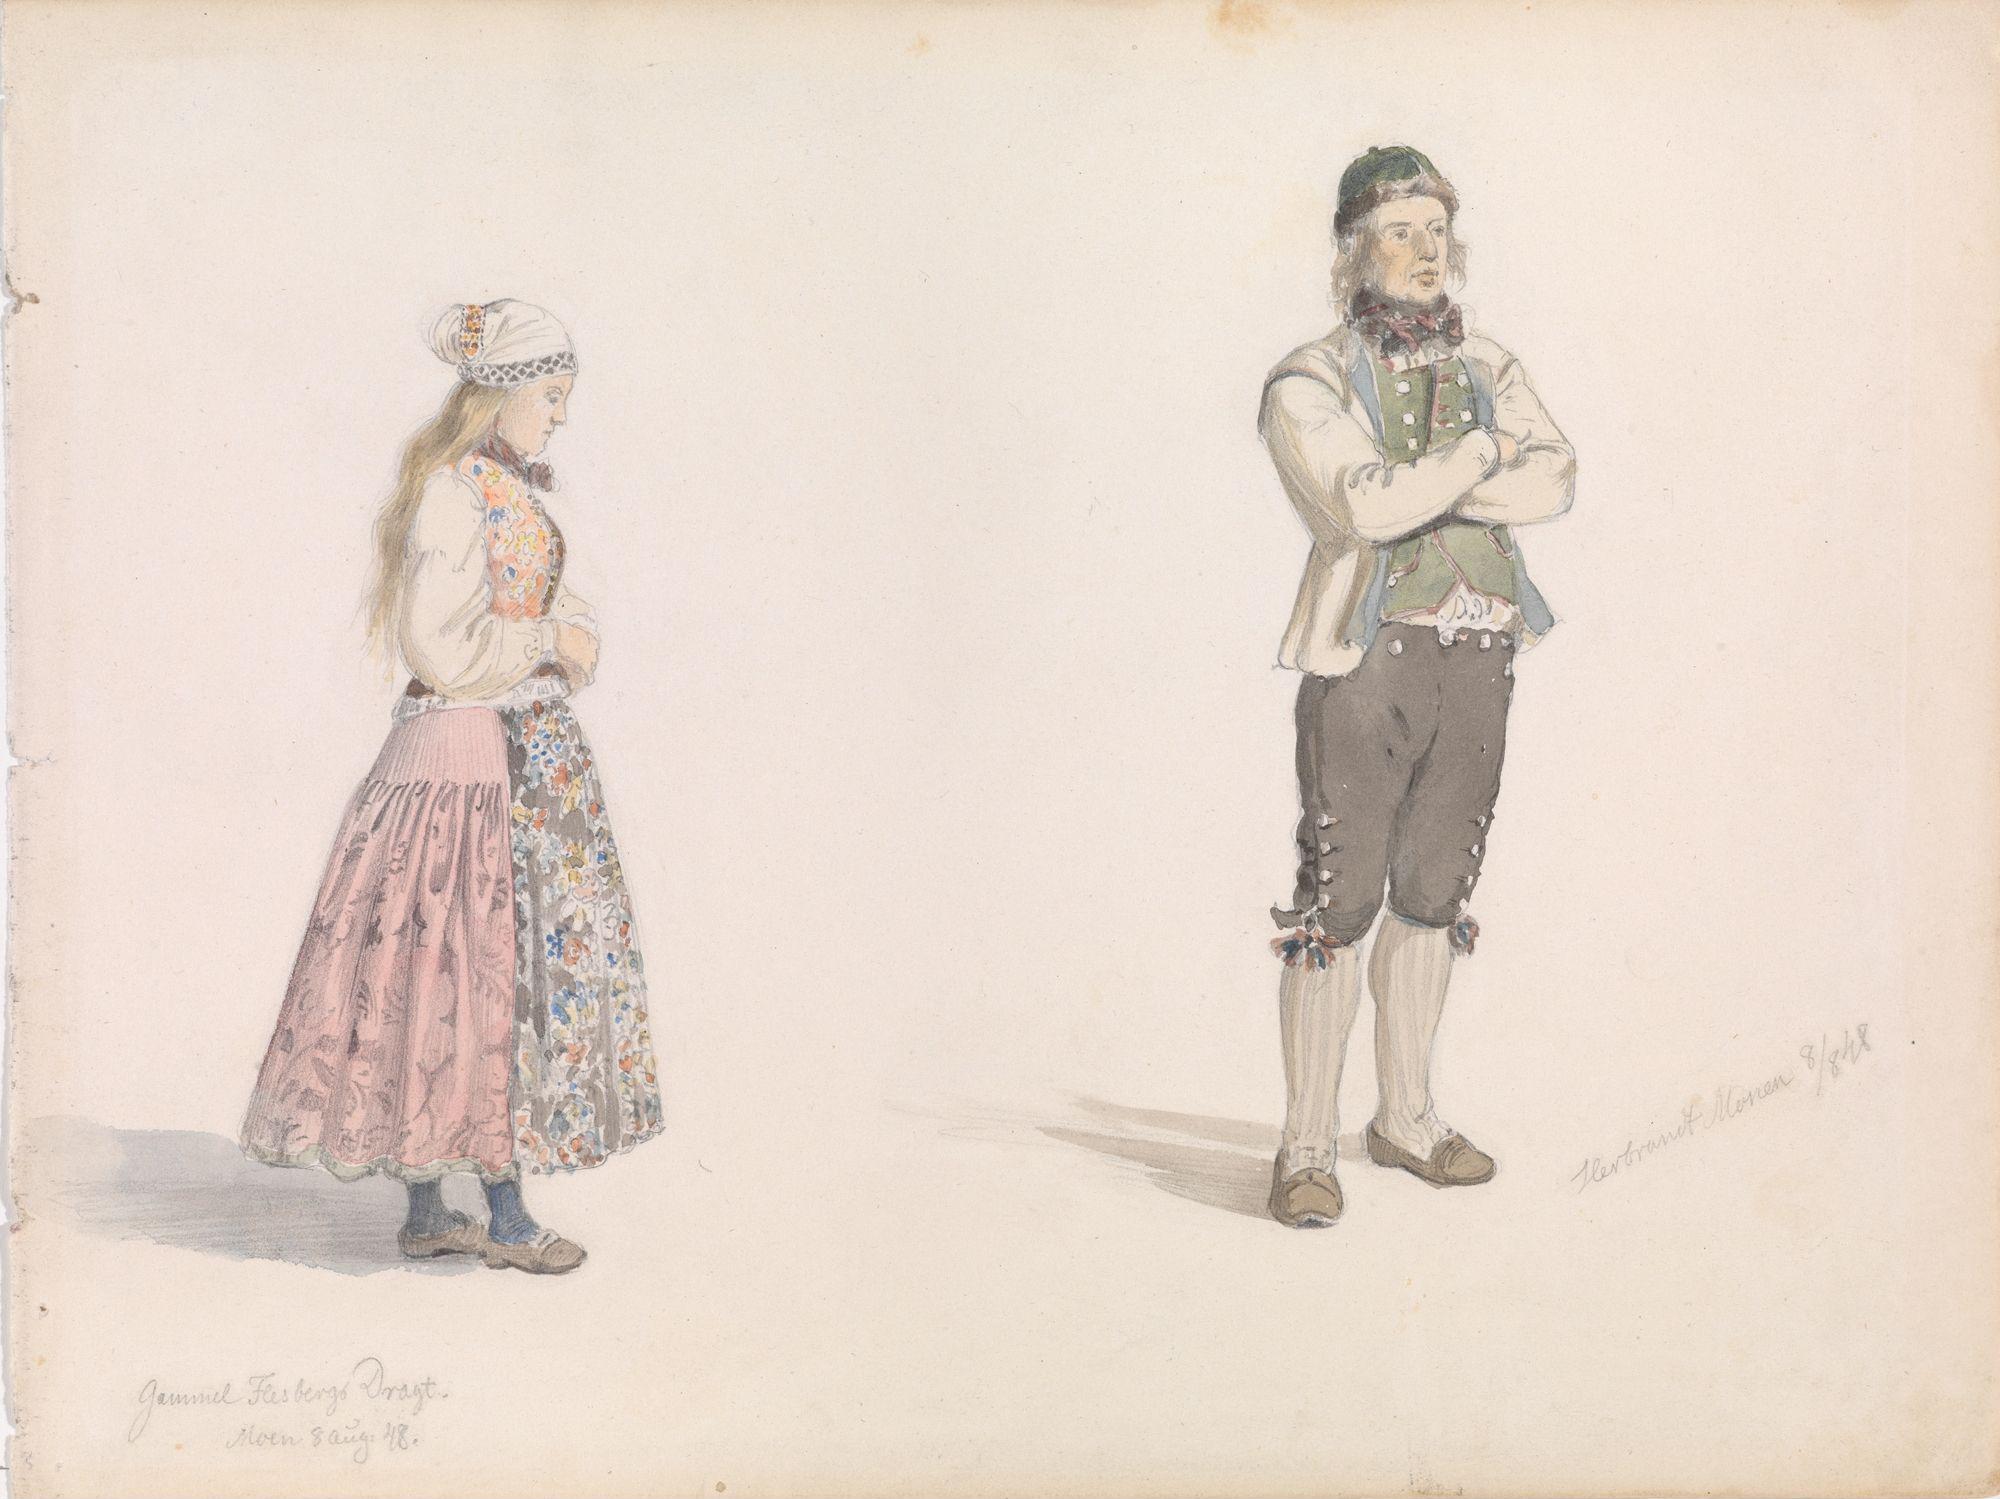 Draktstudie, Flesberg; Herbrand Moen (Adolph Tidemand, 1848) Nasjonalmuseet. Lisens: Fri bruk (Creative Commons - Attribution CC-BY)